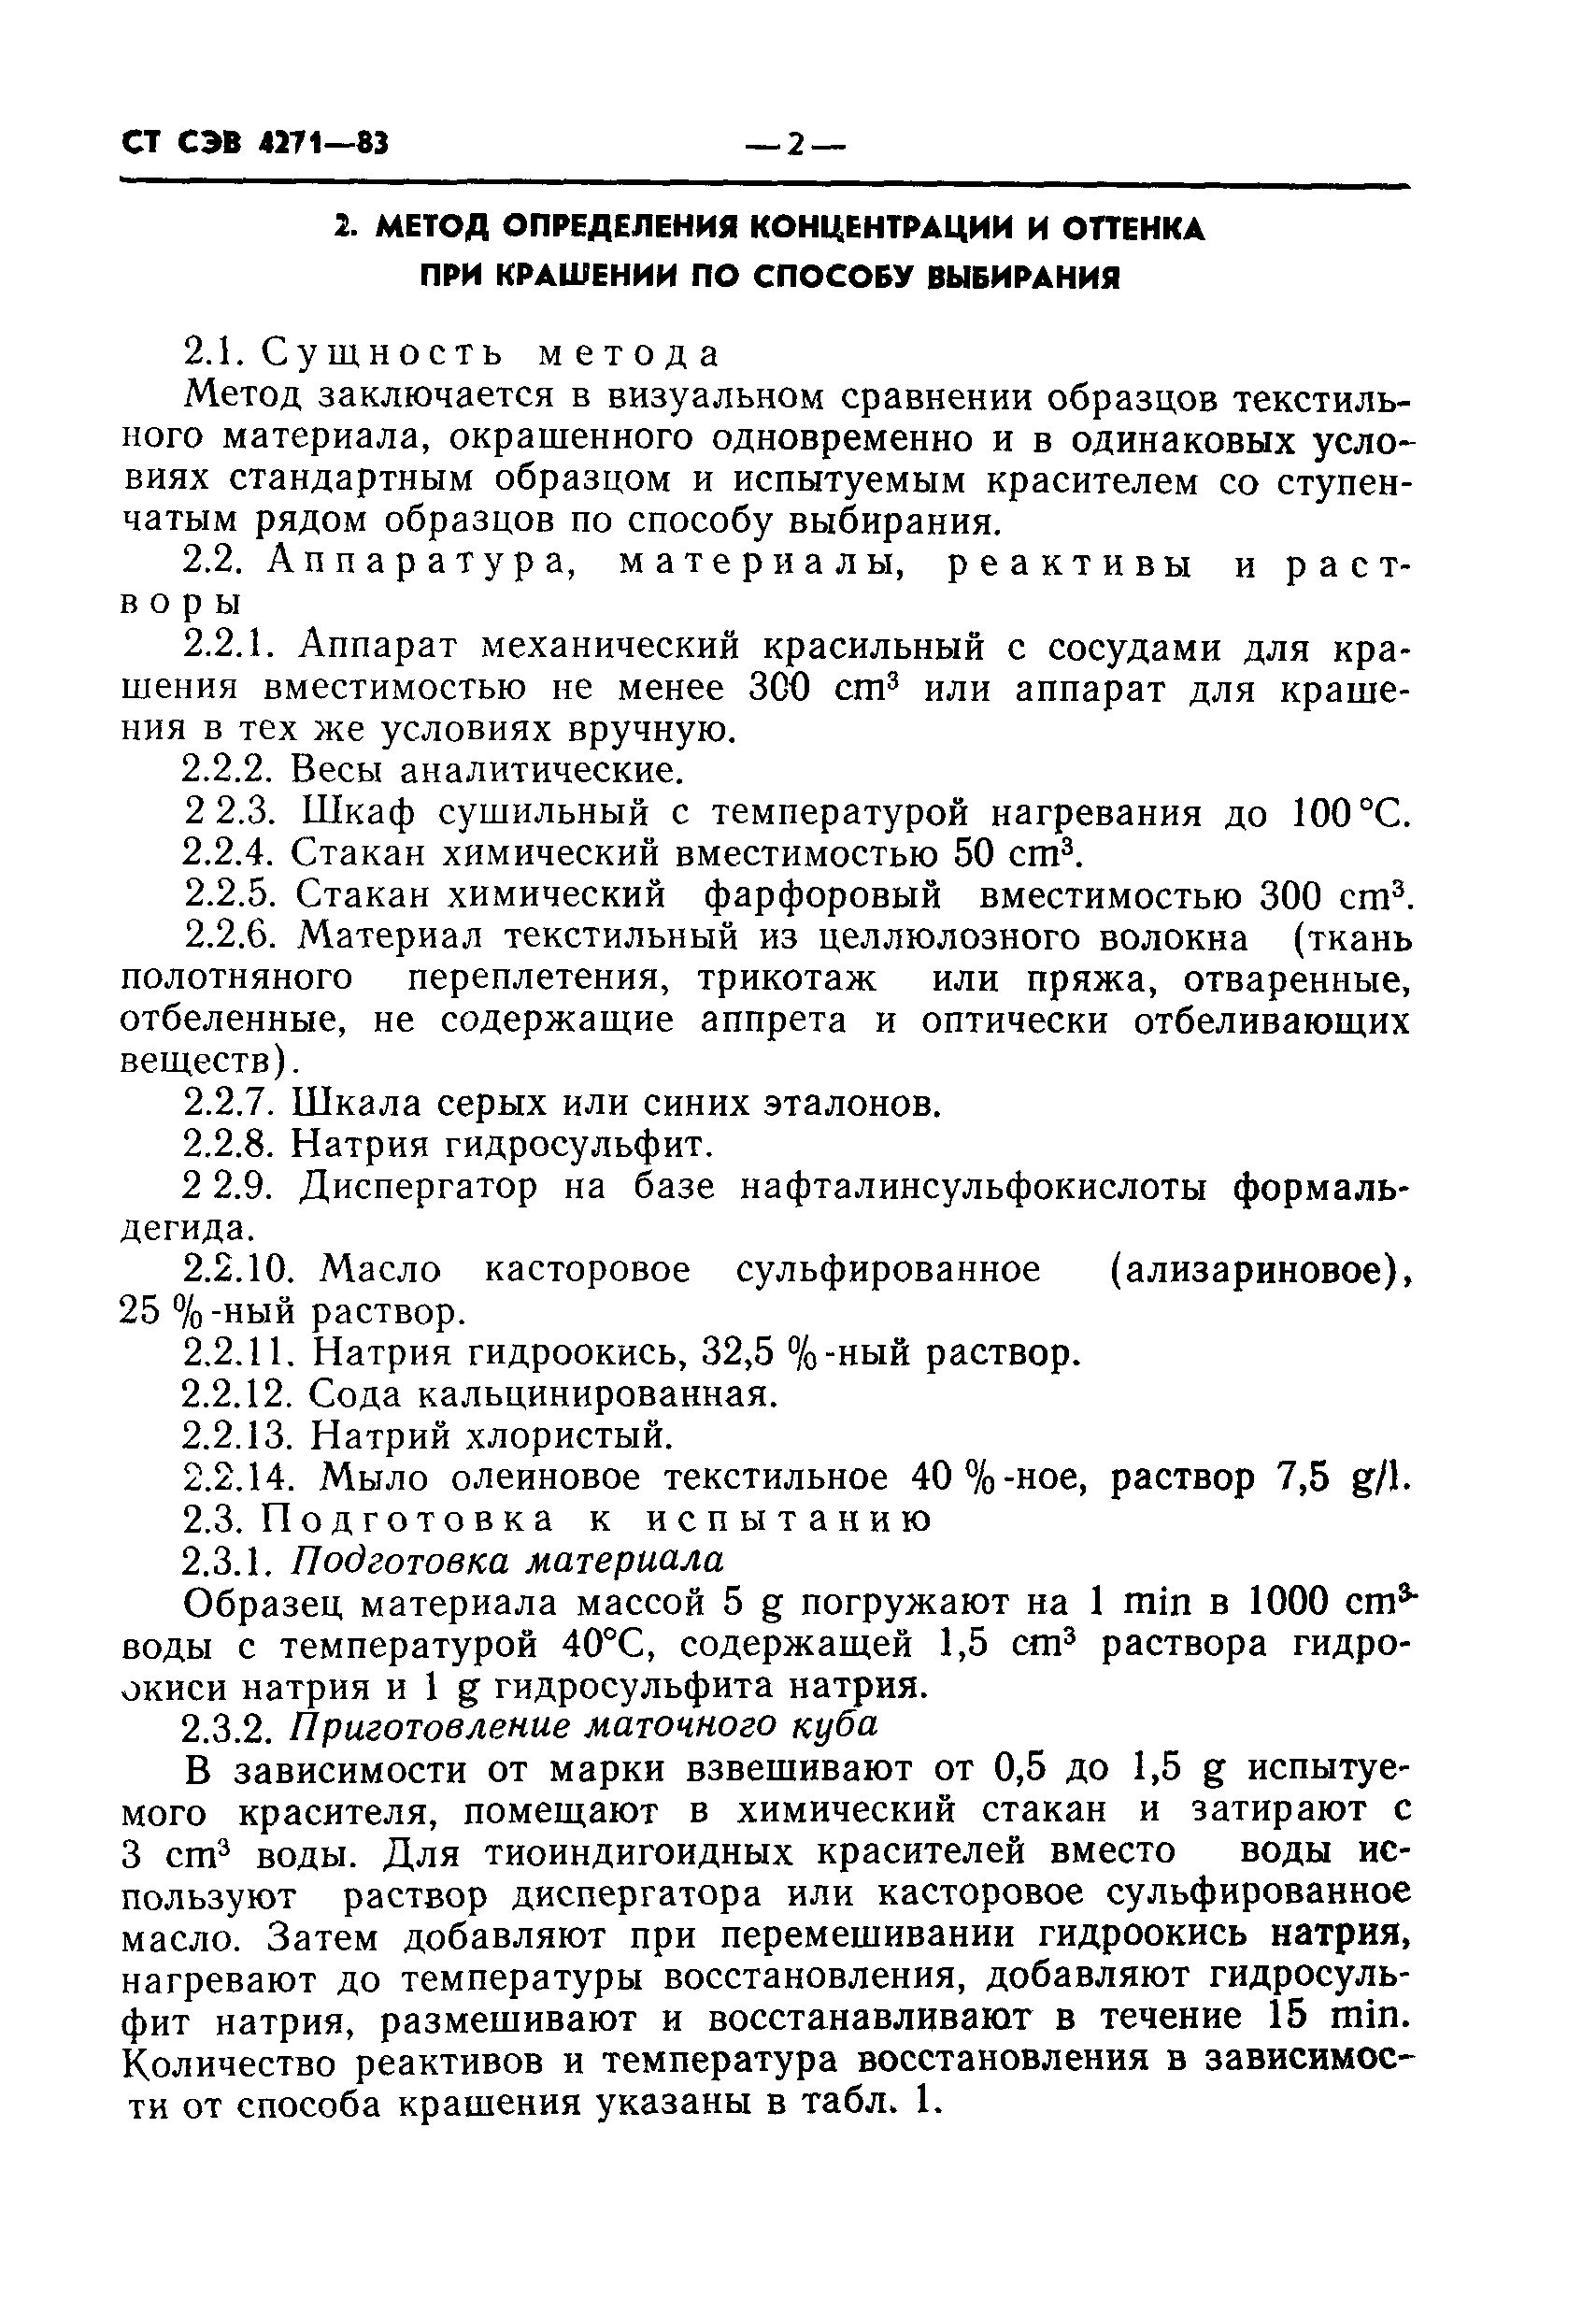 СТ СЭВ 4271-83